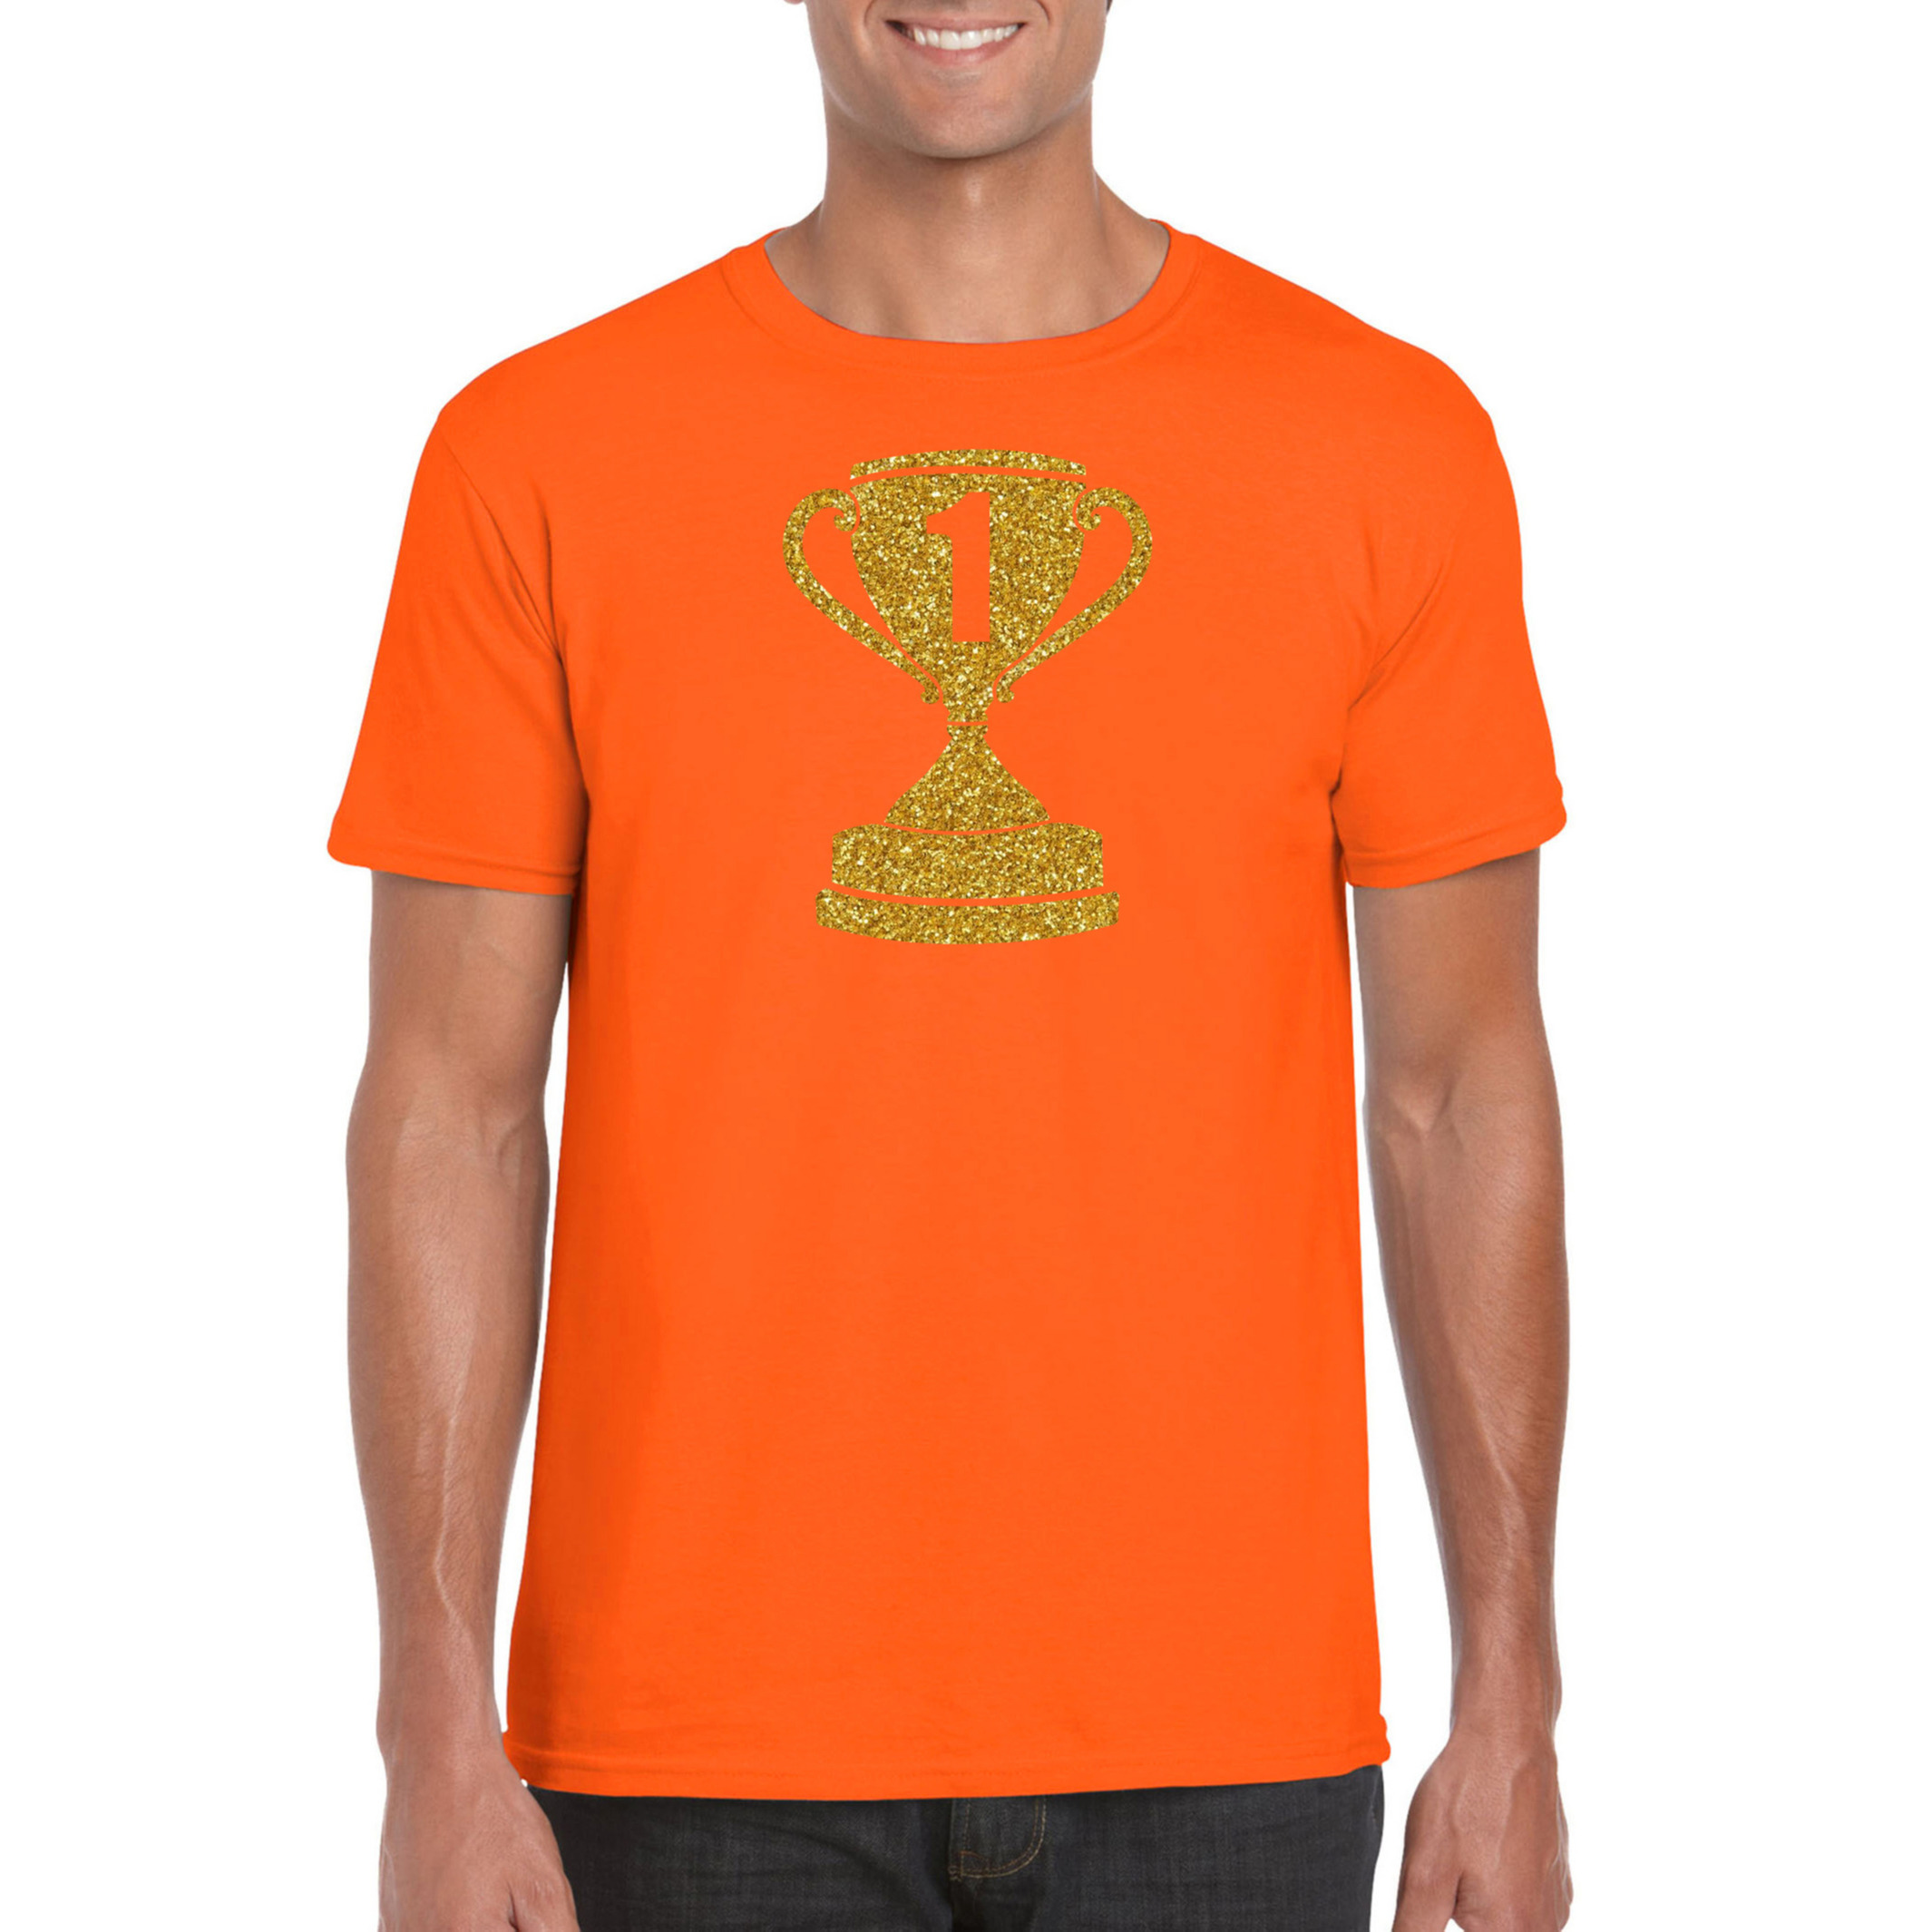 Gouden kampioens beker - nummer 1 t-shirt - kleding oranje heren